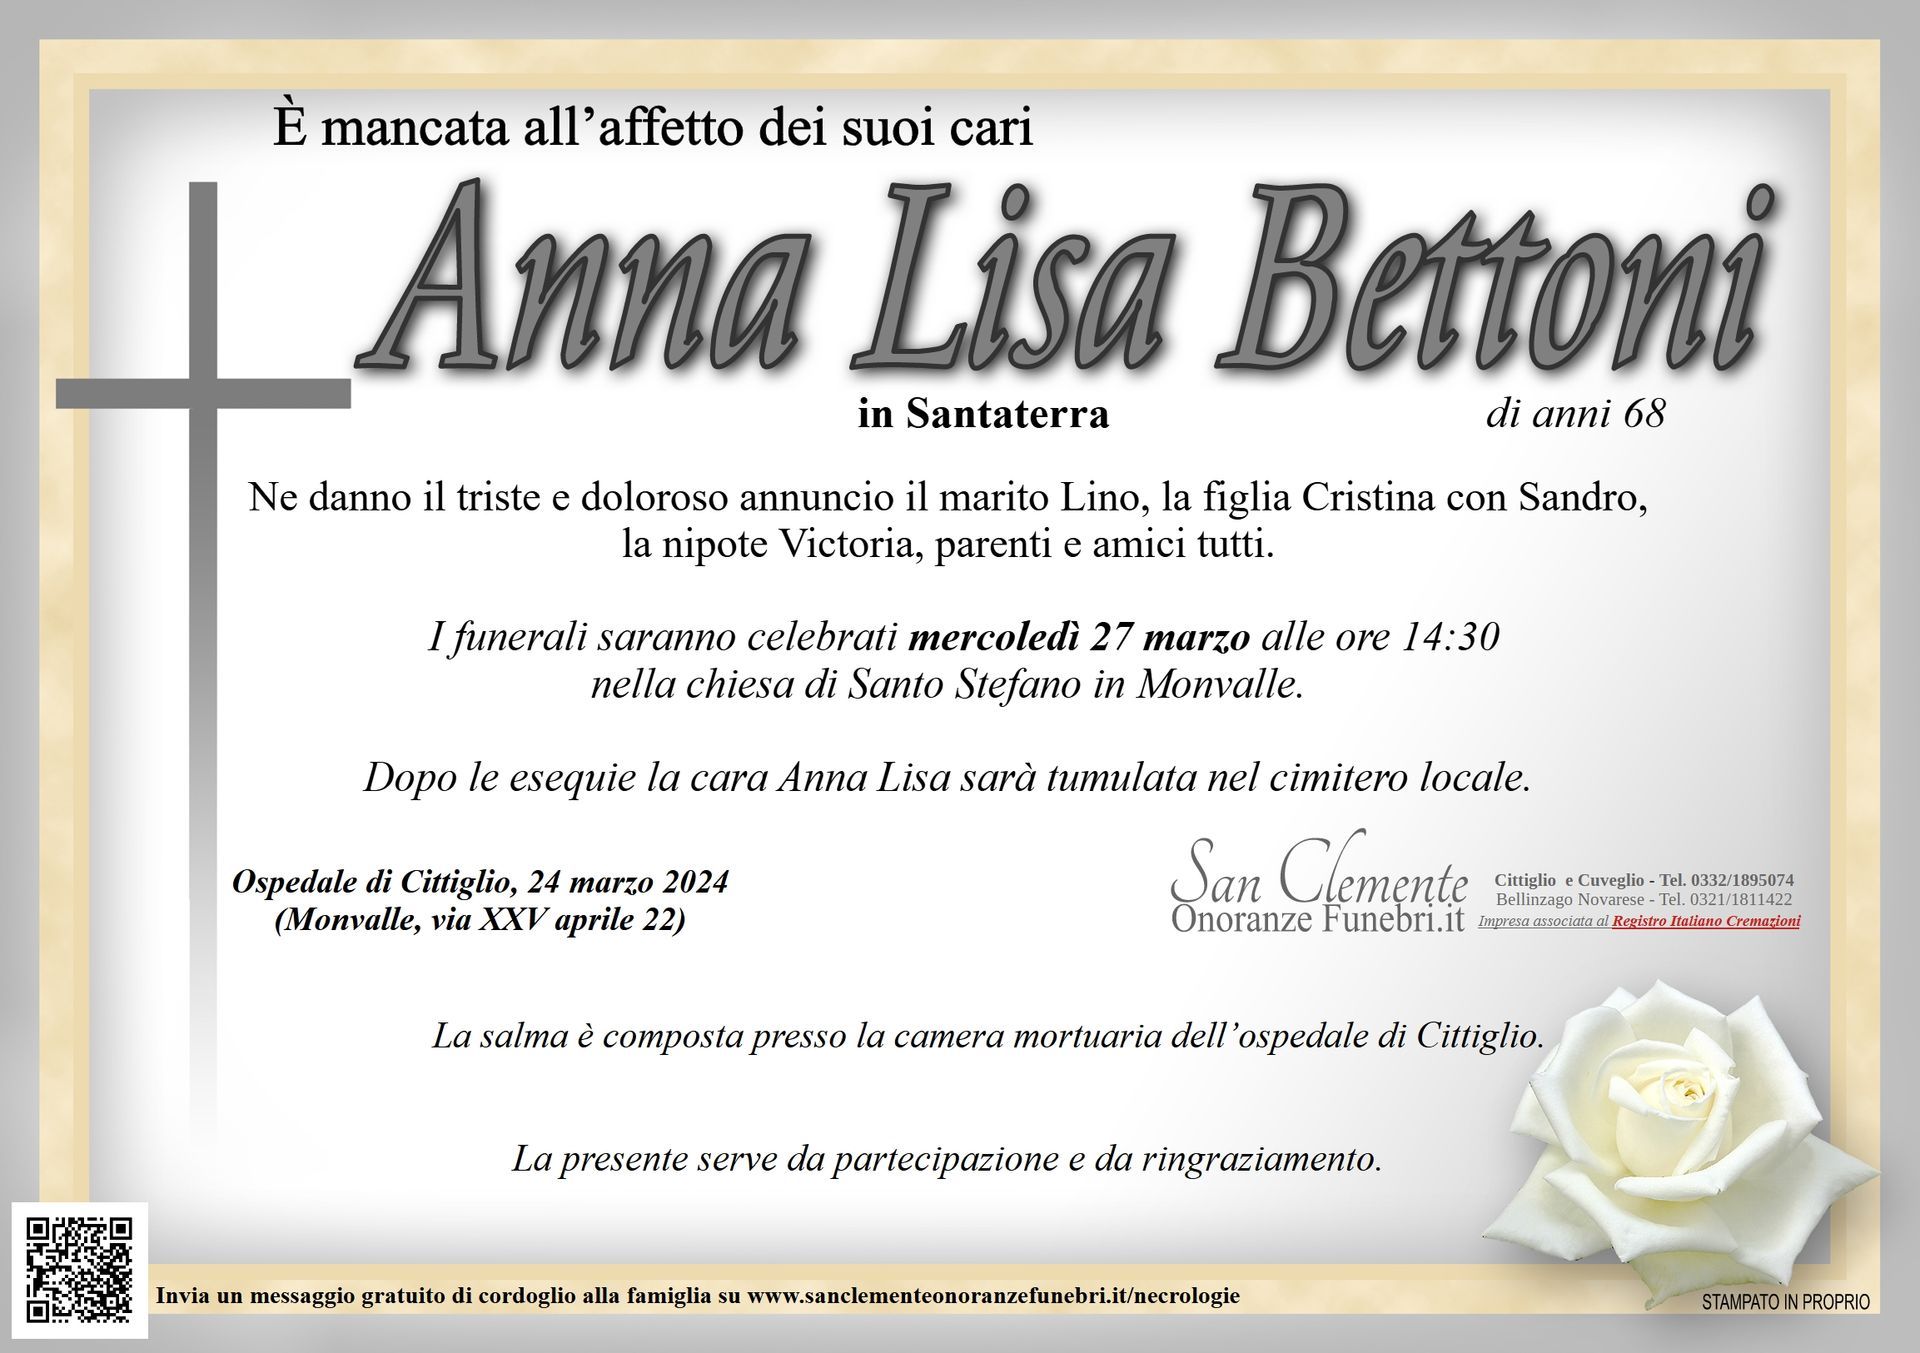 Bettoni Anna Lisa in Santaterra